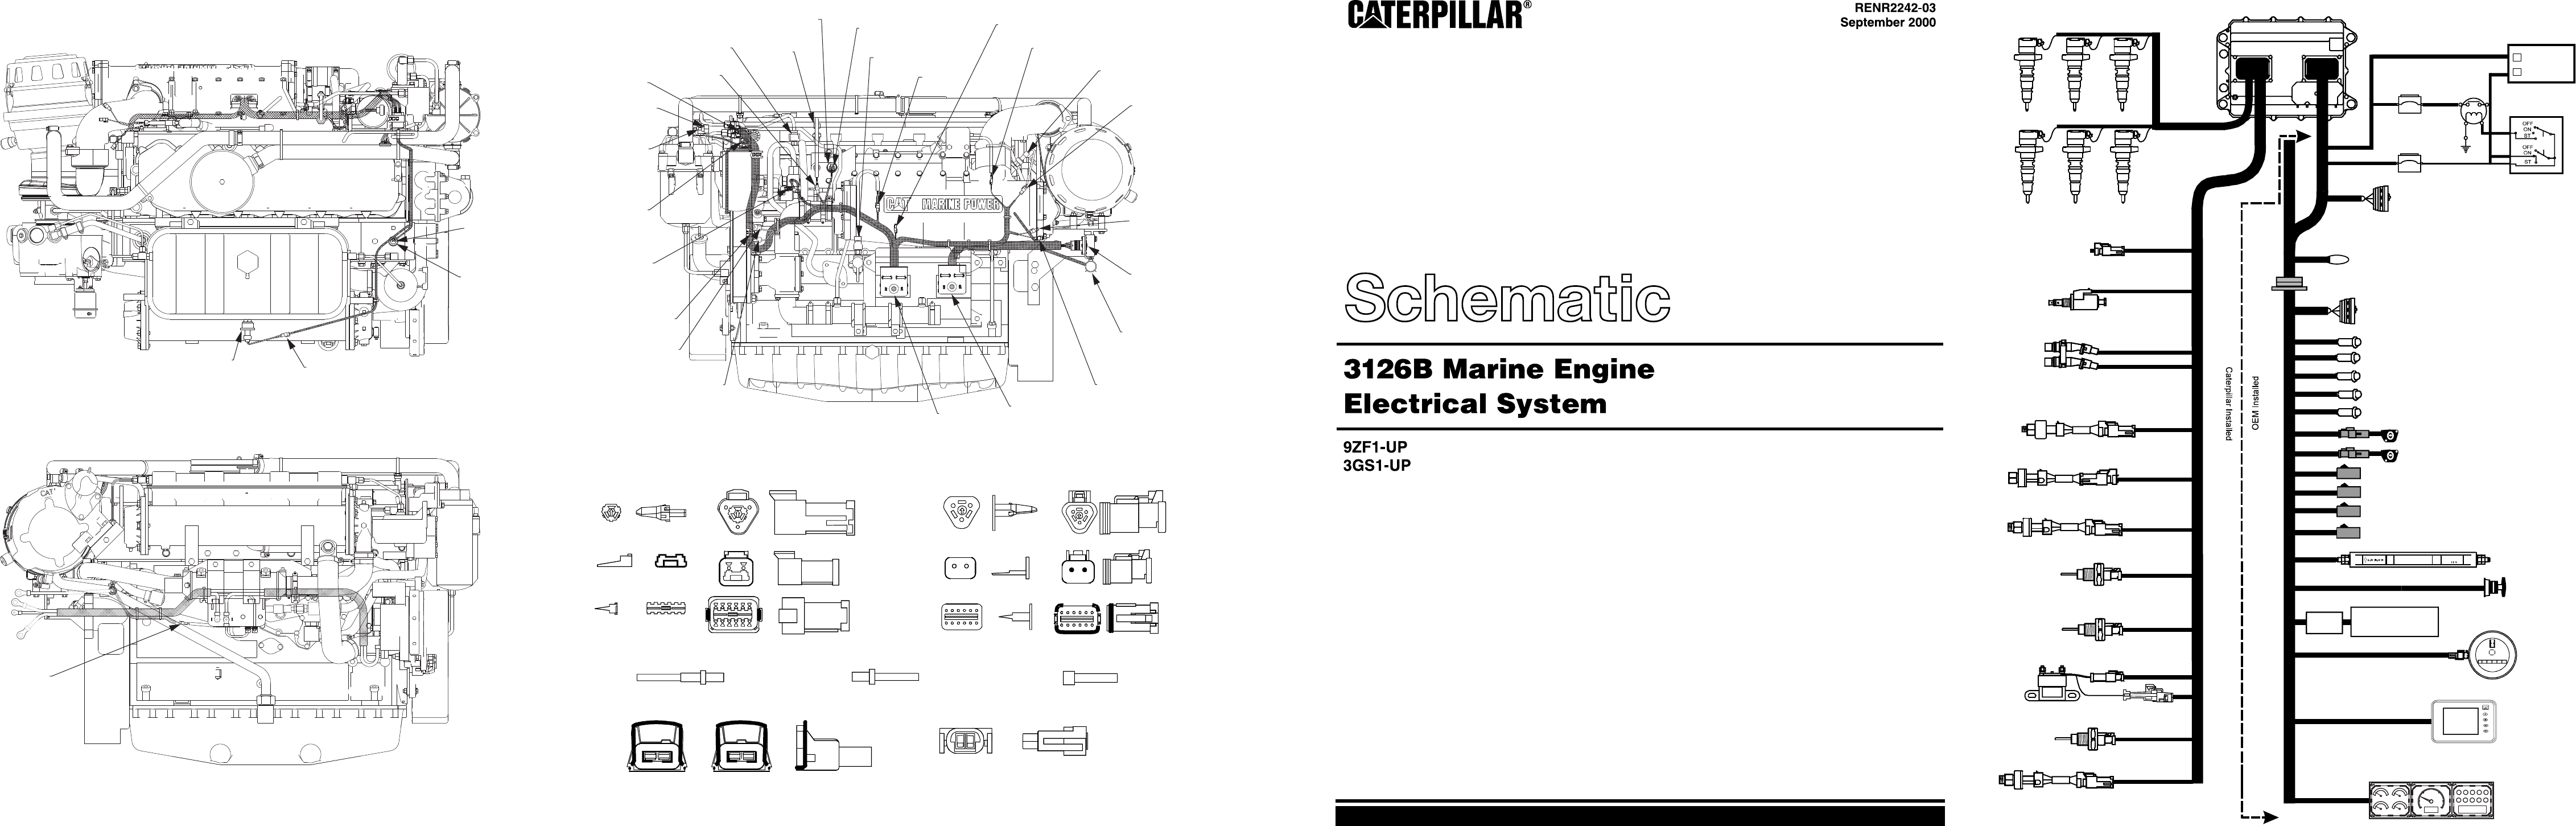 Caterpillar 3126 Engine Diagram - Wiring Diagram